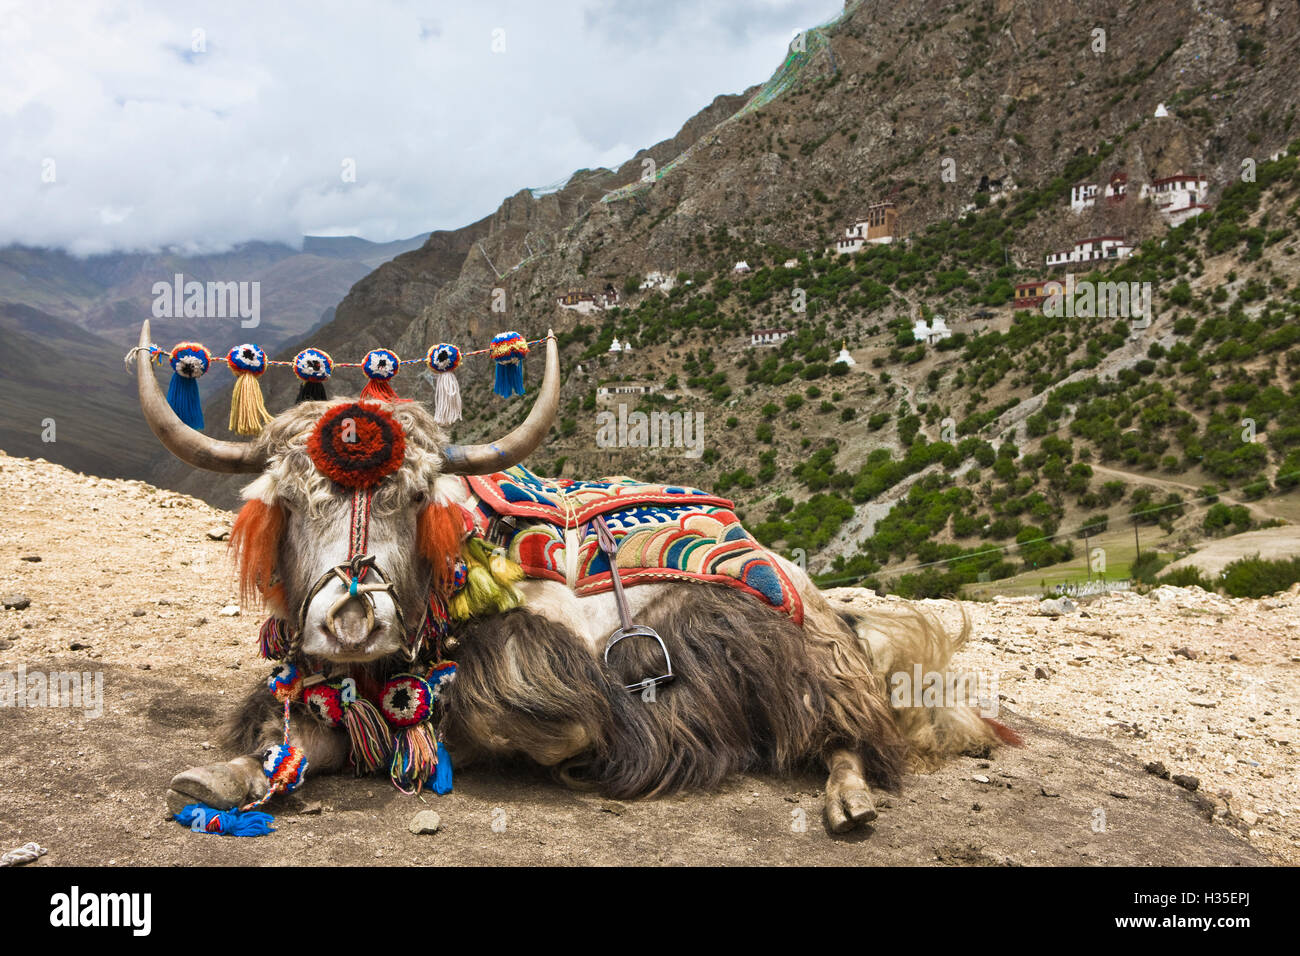 Drak Yerpa, Yak au Tibet, Chine Banque D'Images